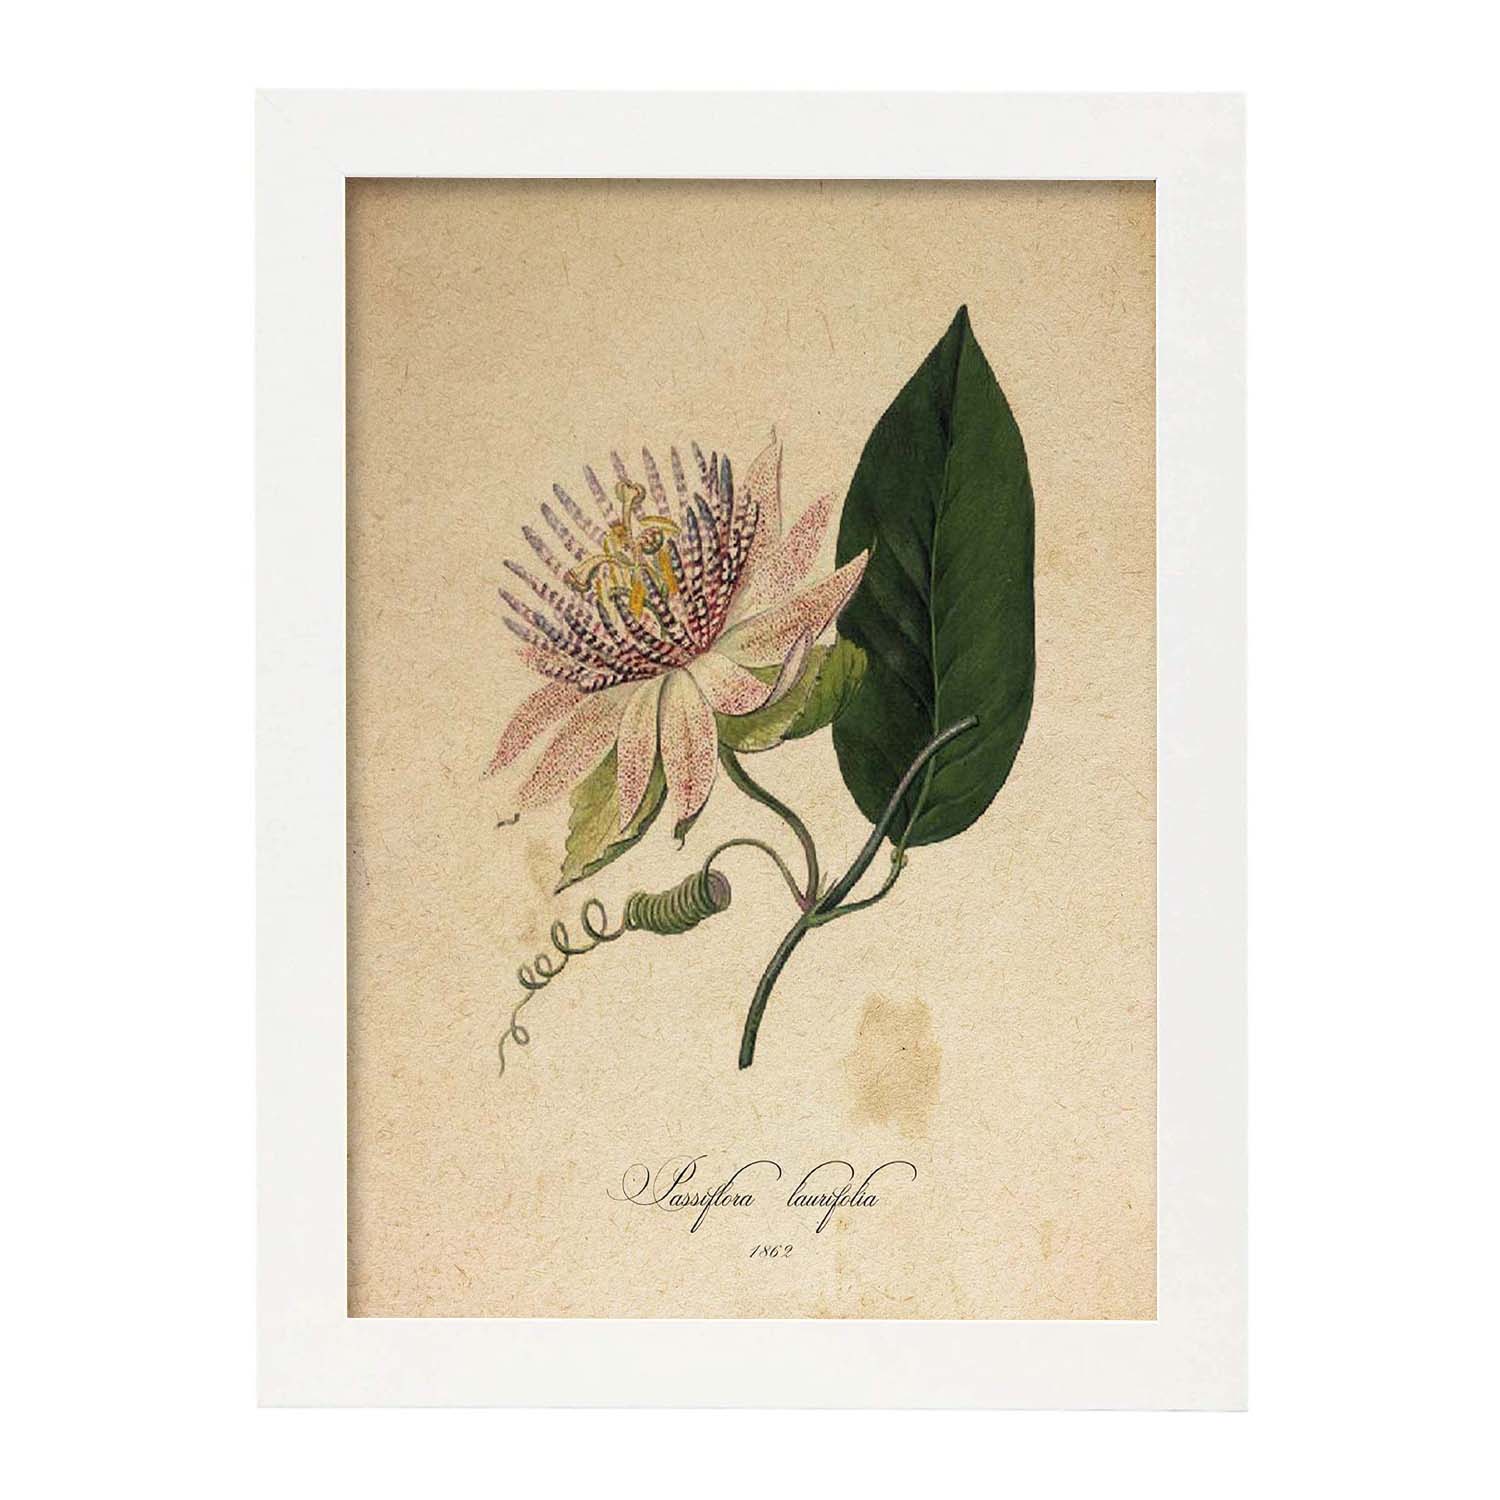 Poster de flores vintage. Lámina Passiflora con diseño vintage.-Artwork-Nacnic-A4-Marco Blanco-Nacnic Estudio SL